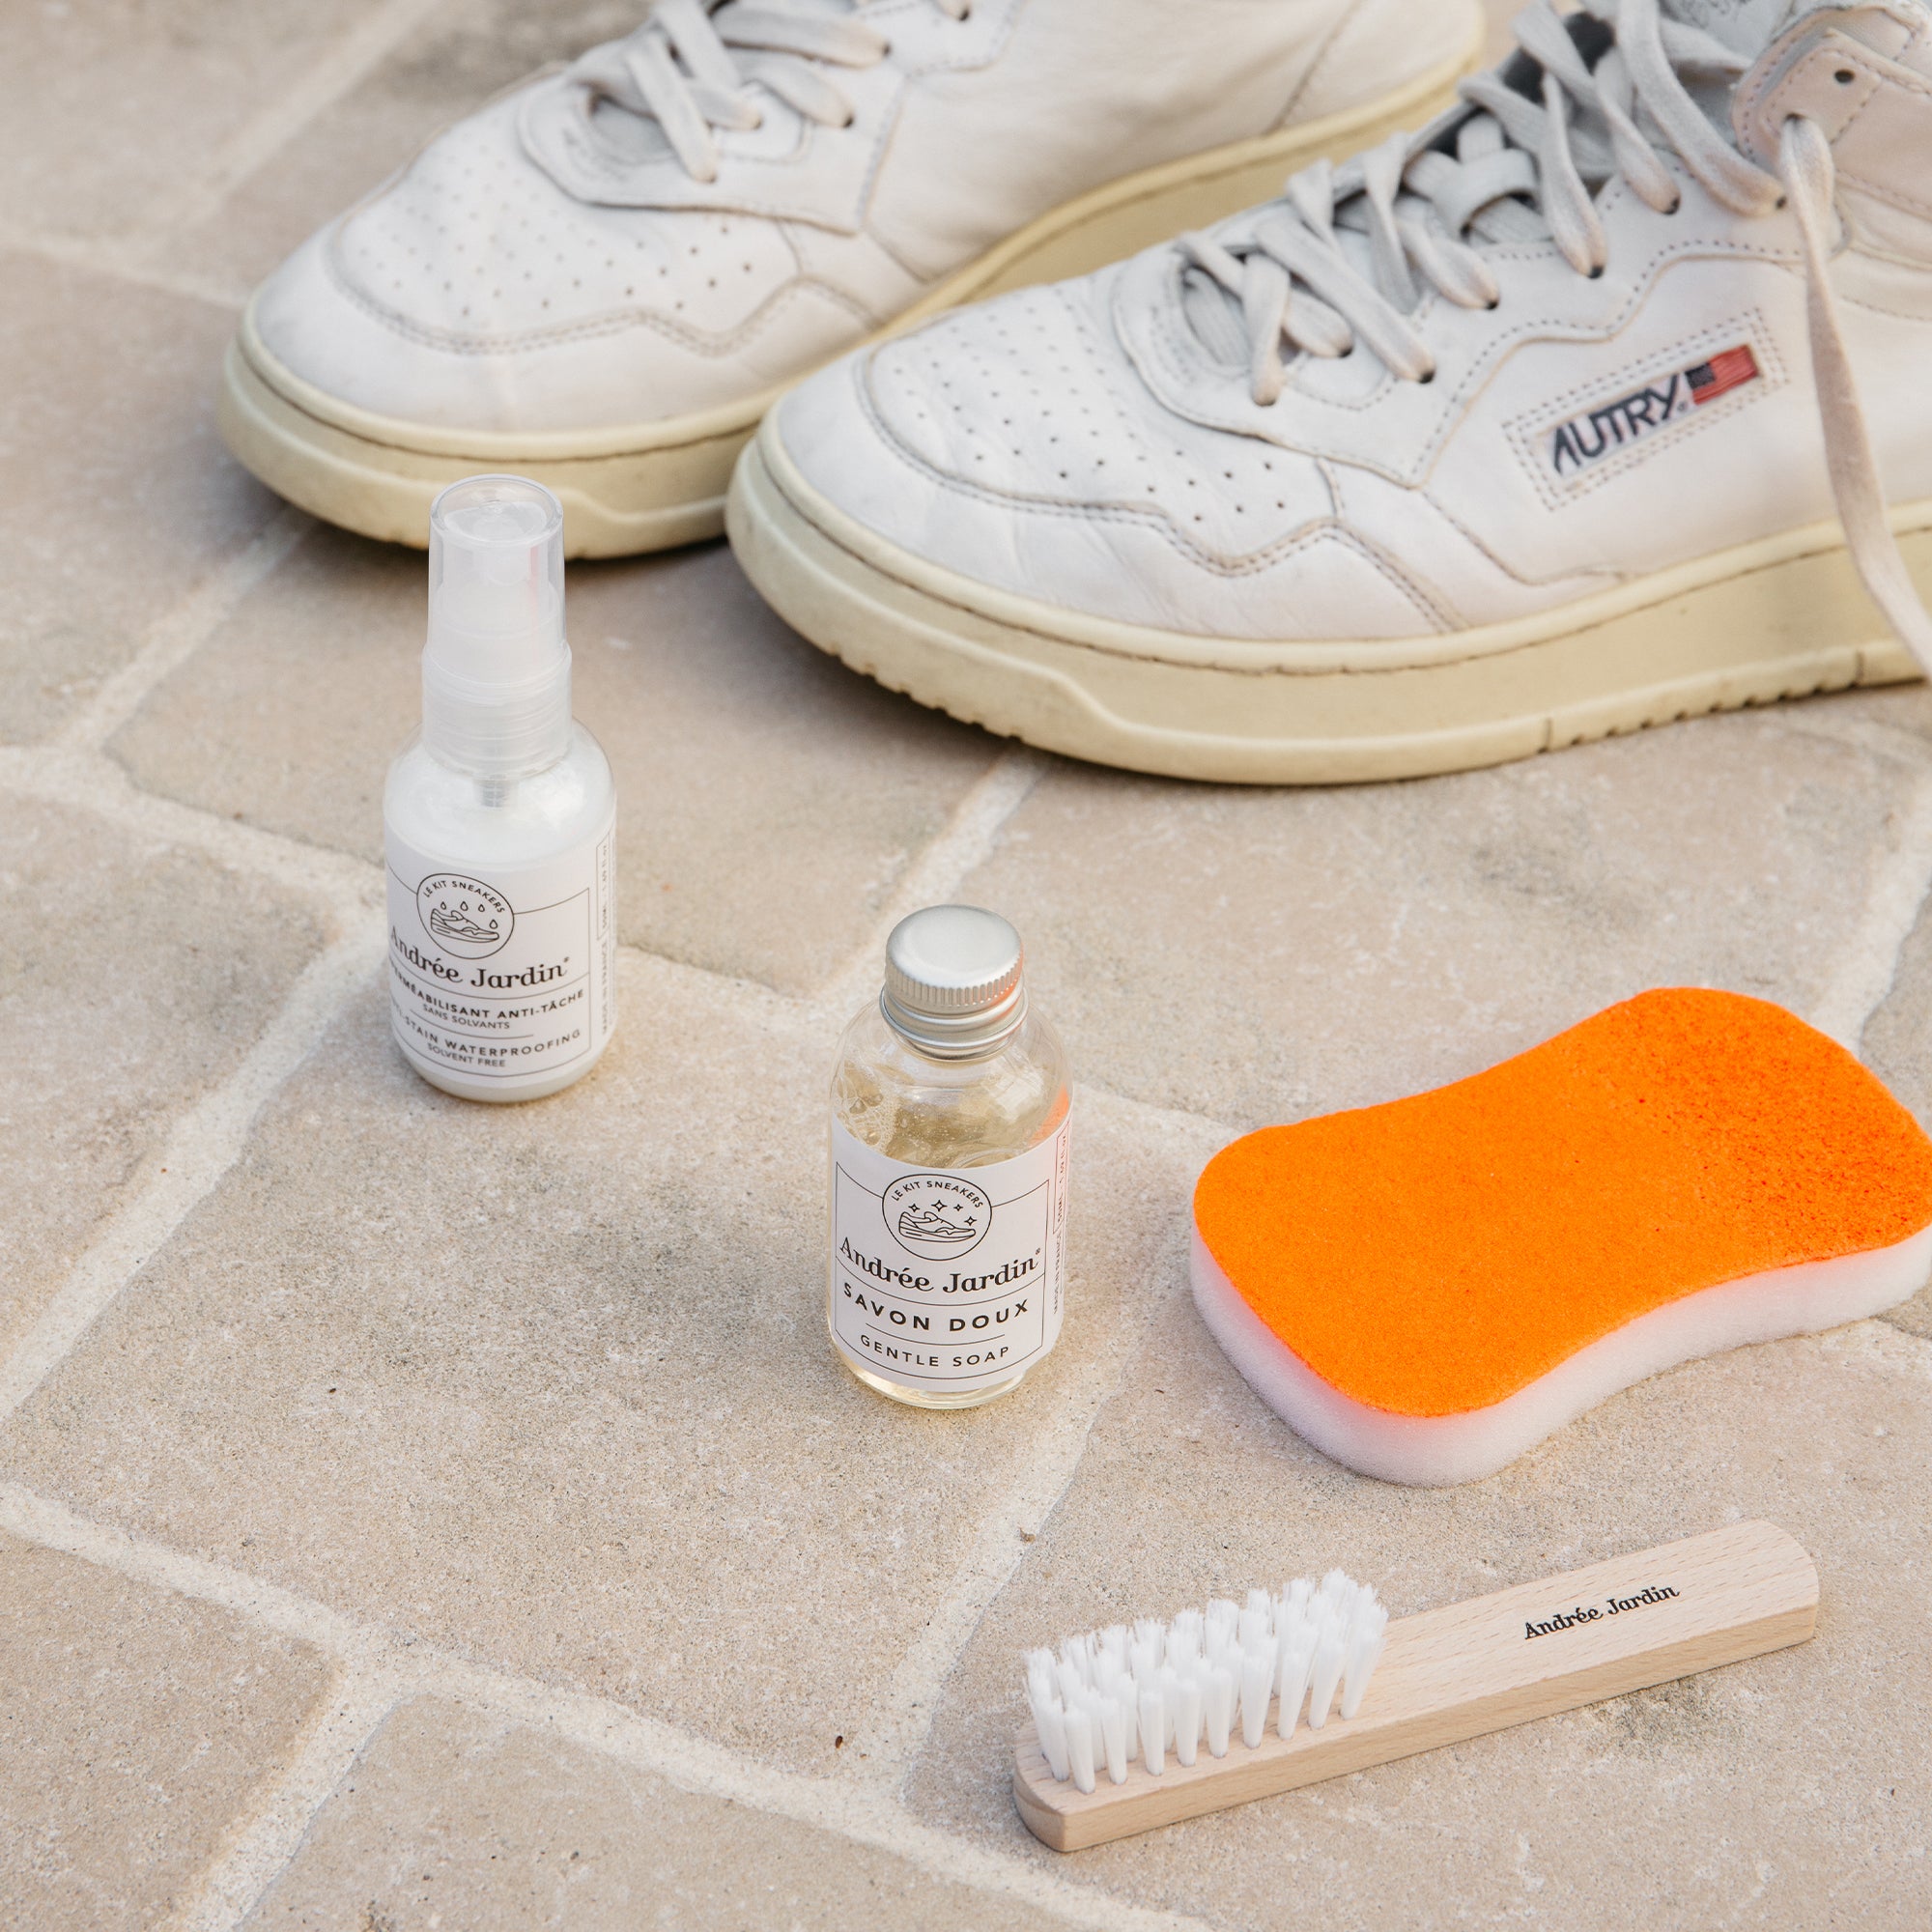 Savon nettoyant sneakers et chaussures - Un cadeau pour un homme